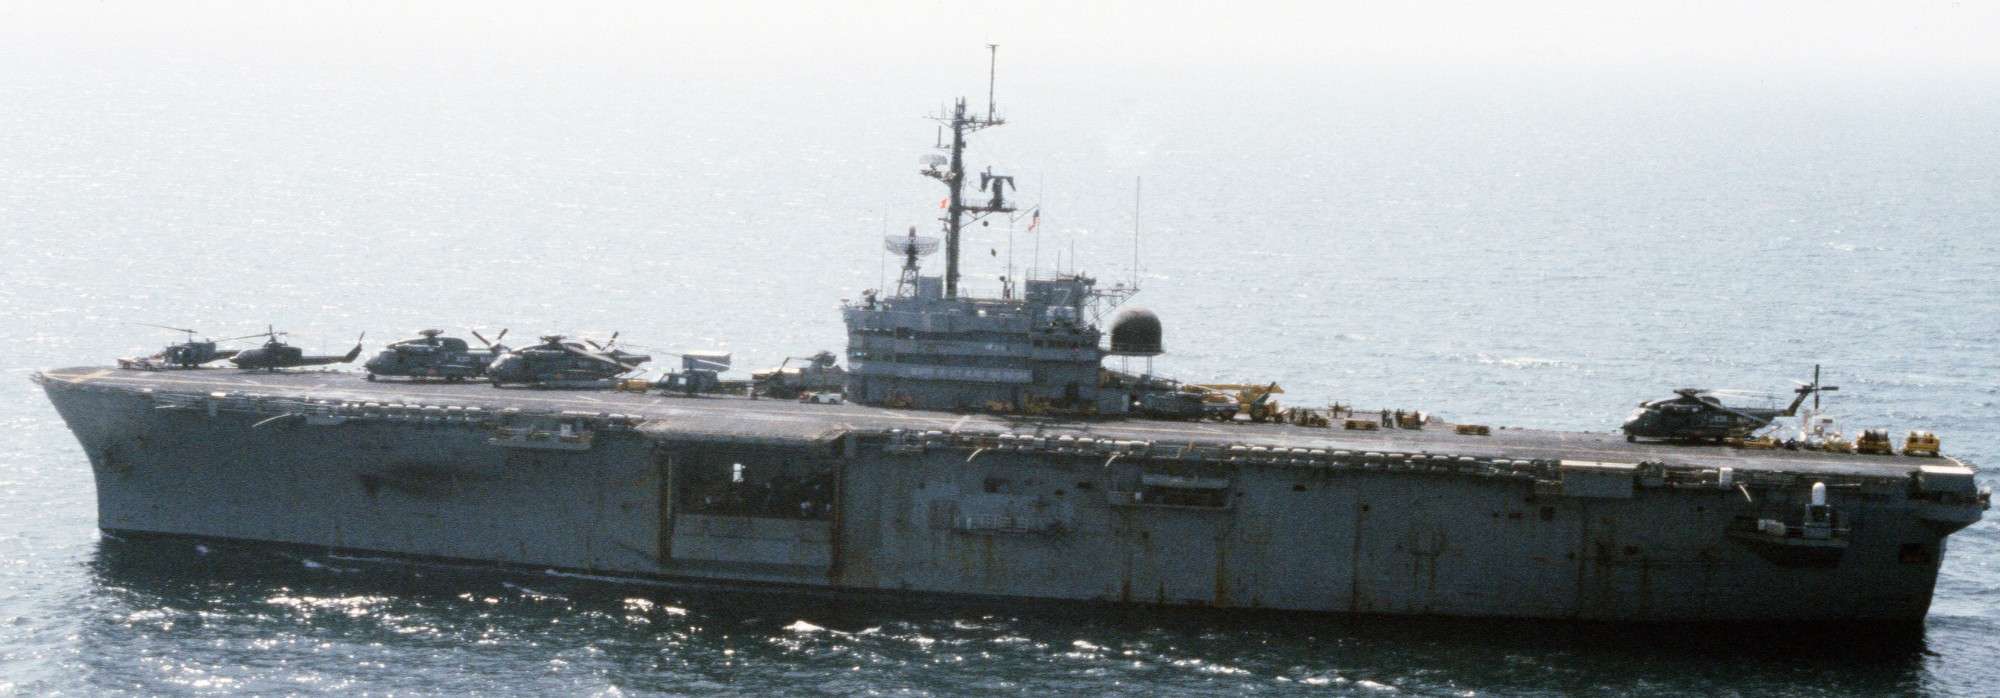 lph-7 uss guadalcanal iwo jima class amphibious assault ship landing platform helicopter us navy 49